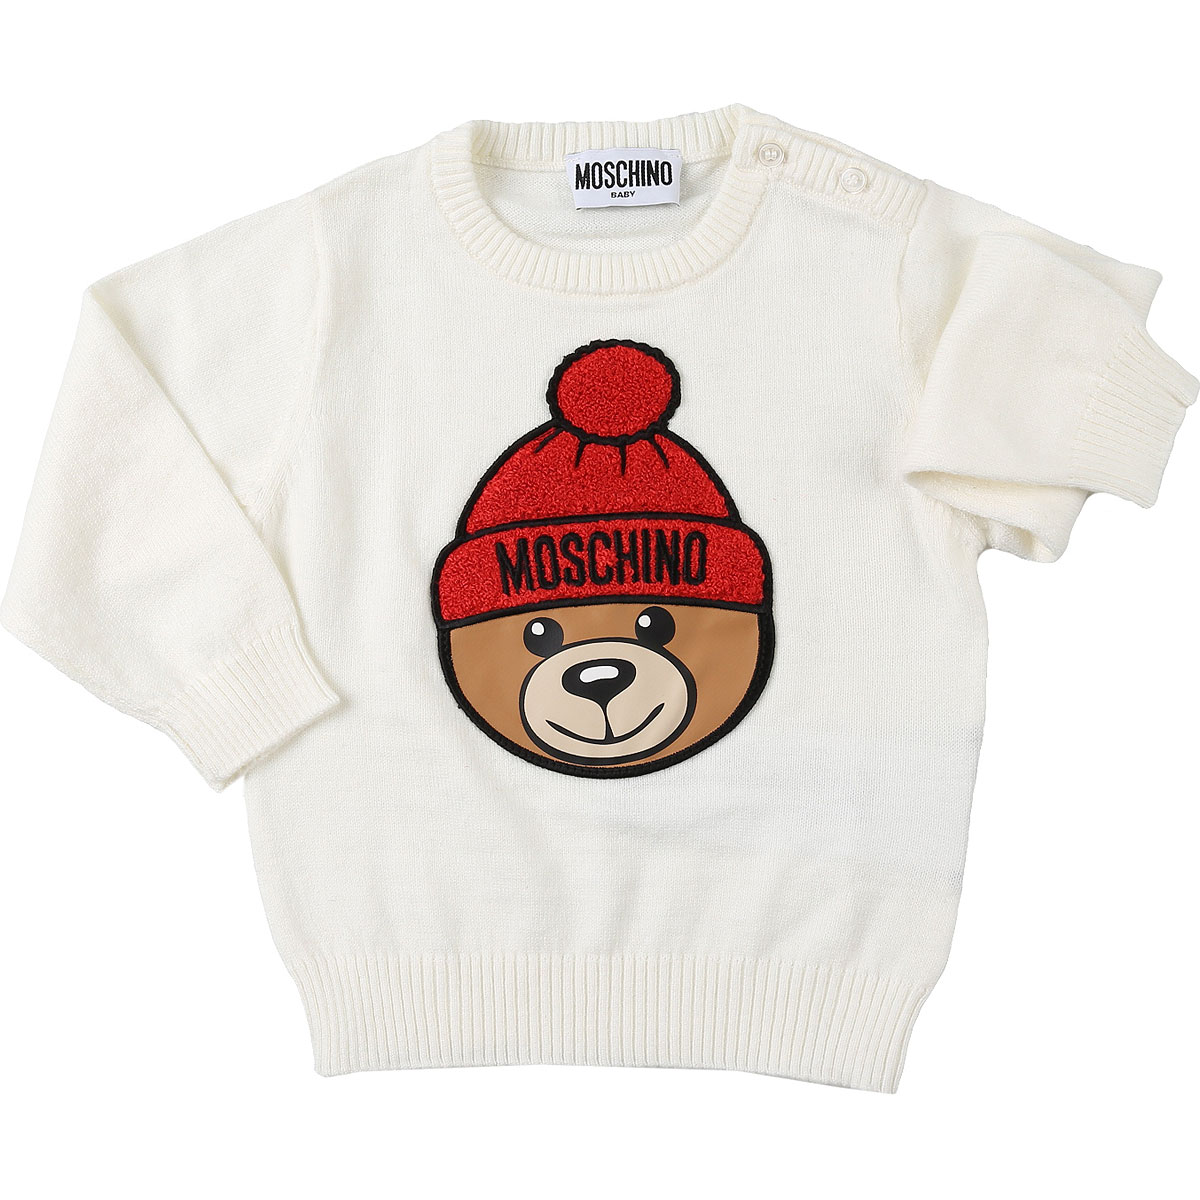 Moschino Baby Pullover für Jungen Günstig im Sale, Weiss, Cott, 2017, 12 M 18M 6M